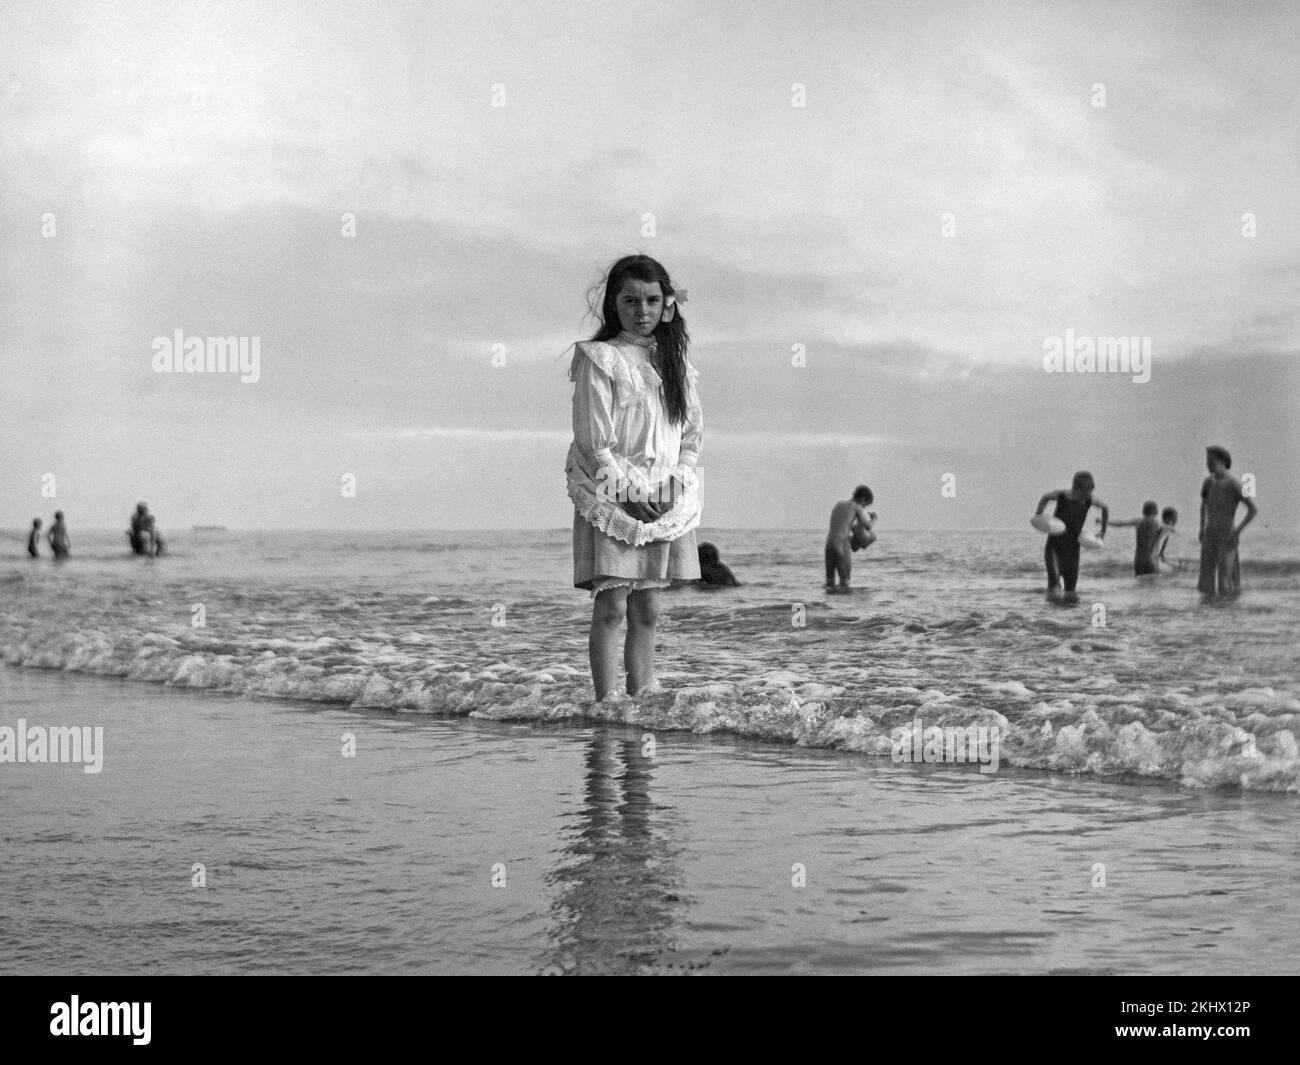 Fotografía en blanco y negro de alate victoriana que muestra a una joven junto al mar, remando al pie desnudo en el borde del agua. Foto de stock